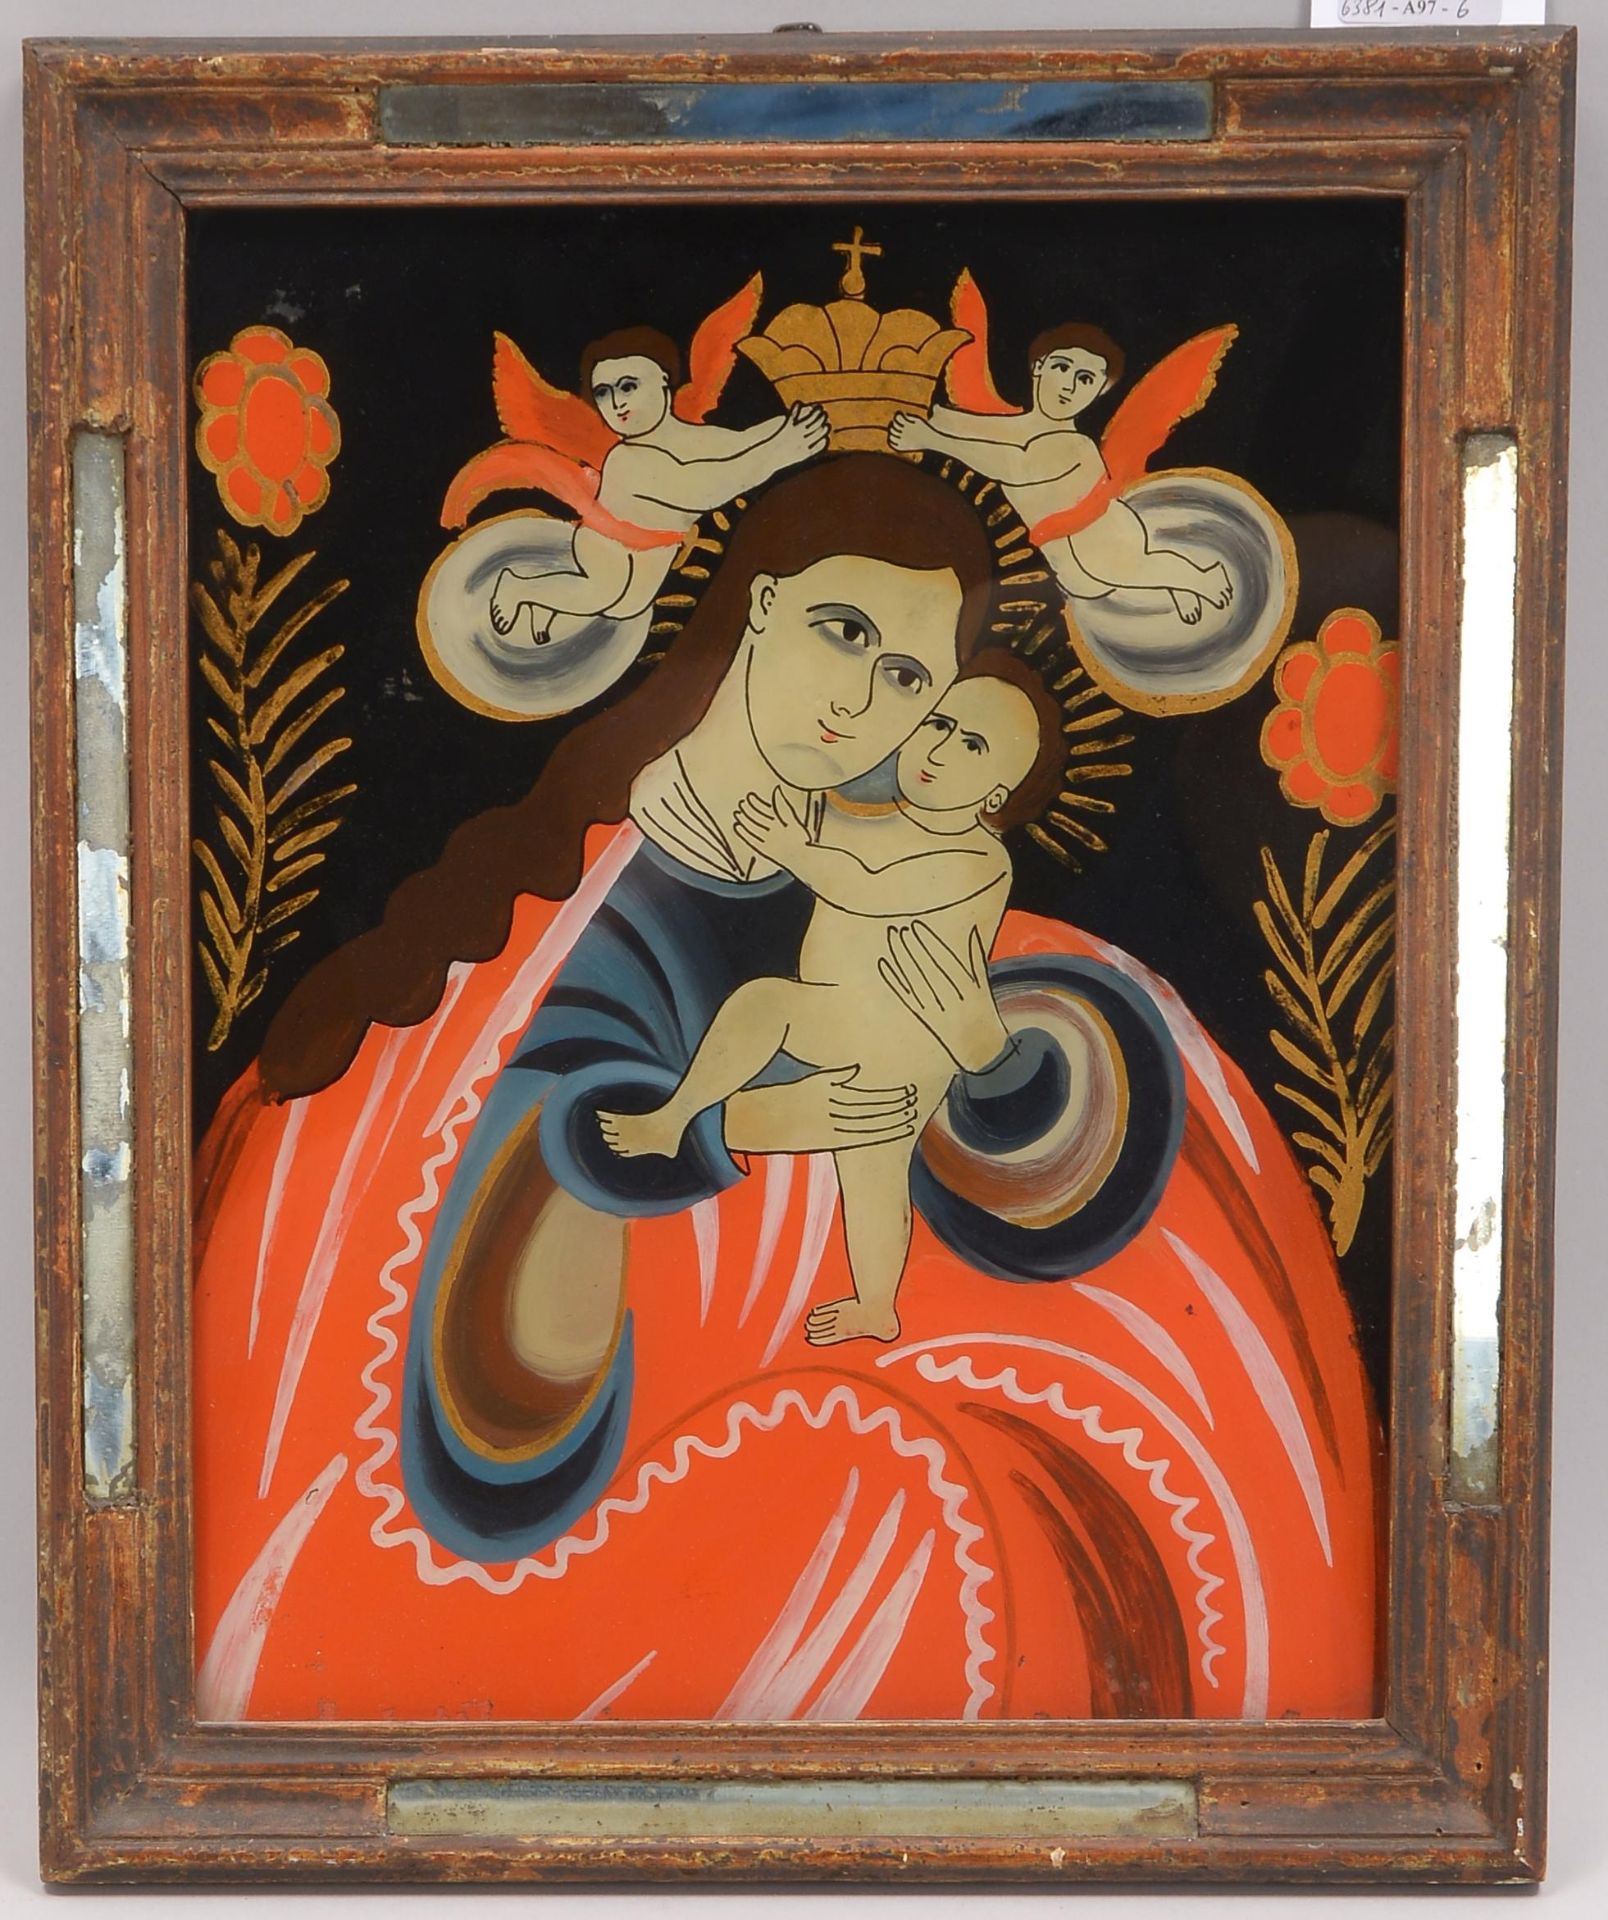 Hinterglasmalerei, -Muttergottes mit dem Jesuskind-, gerahmt, Bildmasse 37 x 29 cm, Gesamtmasse 43 x